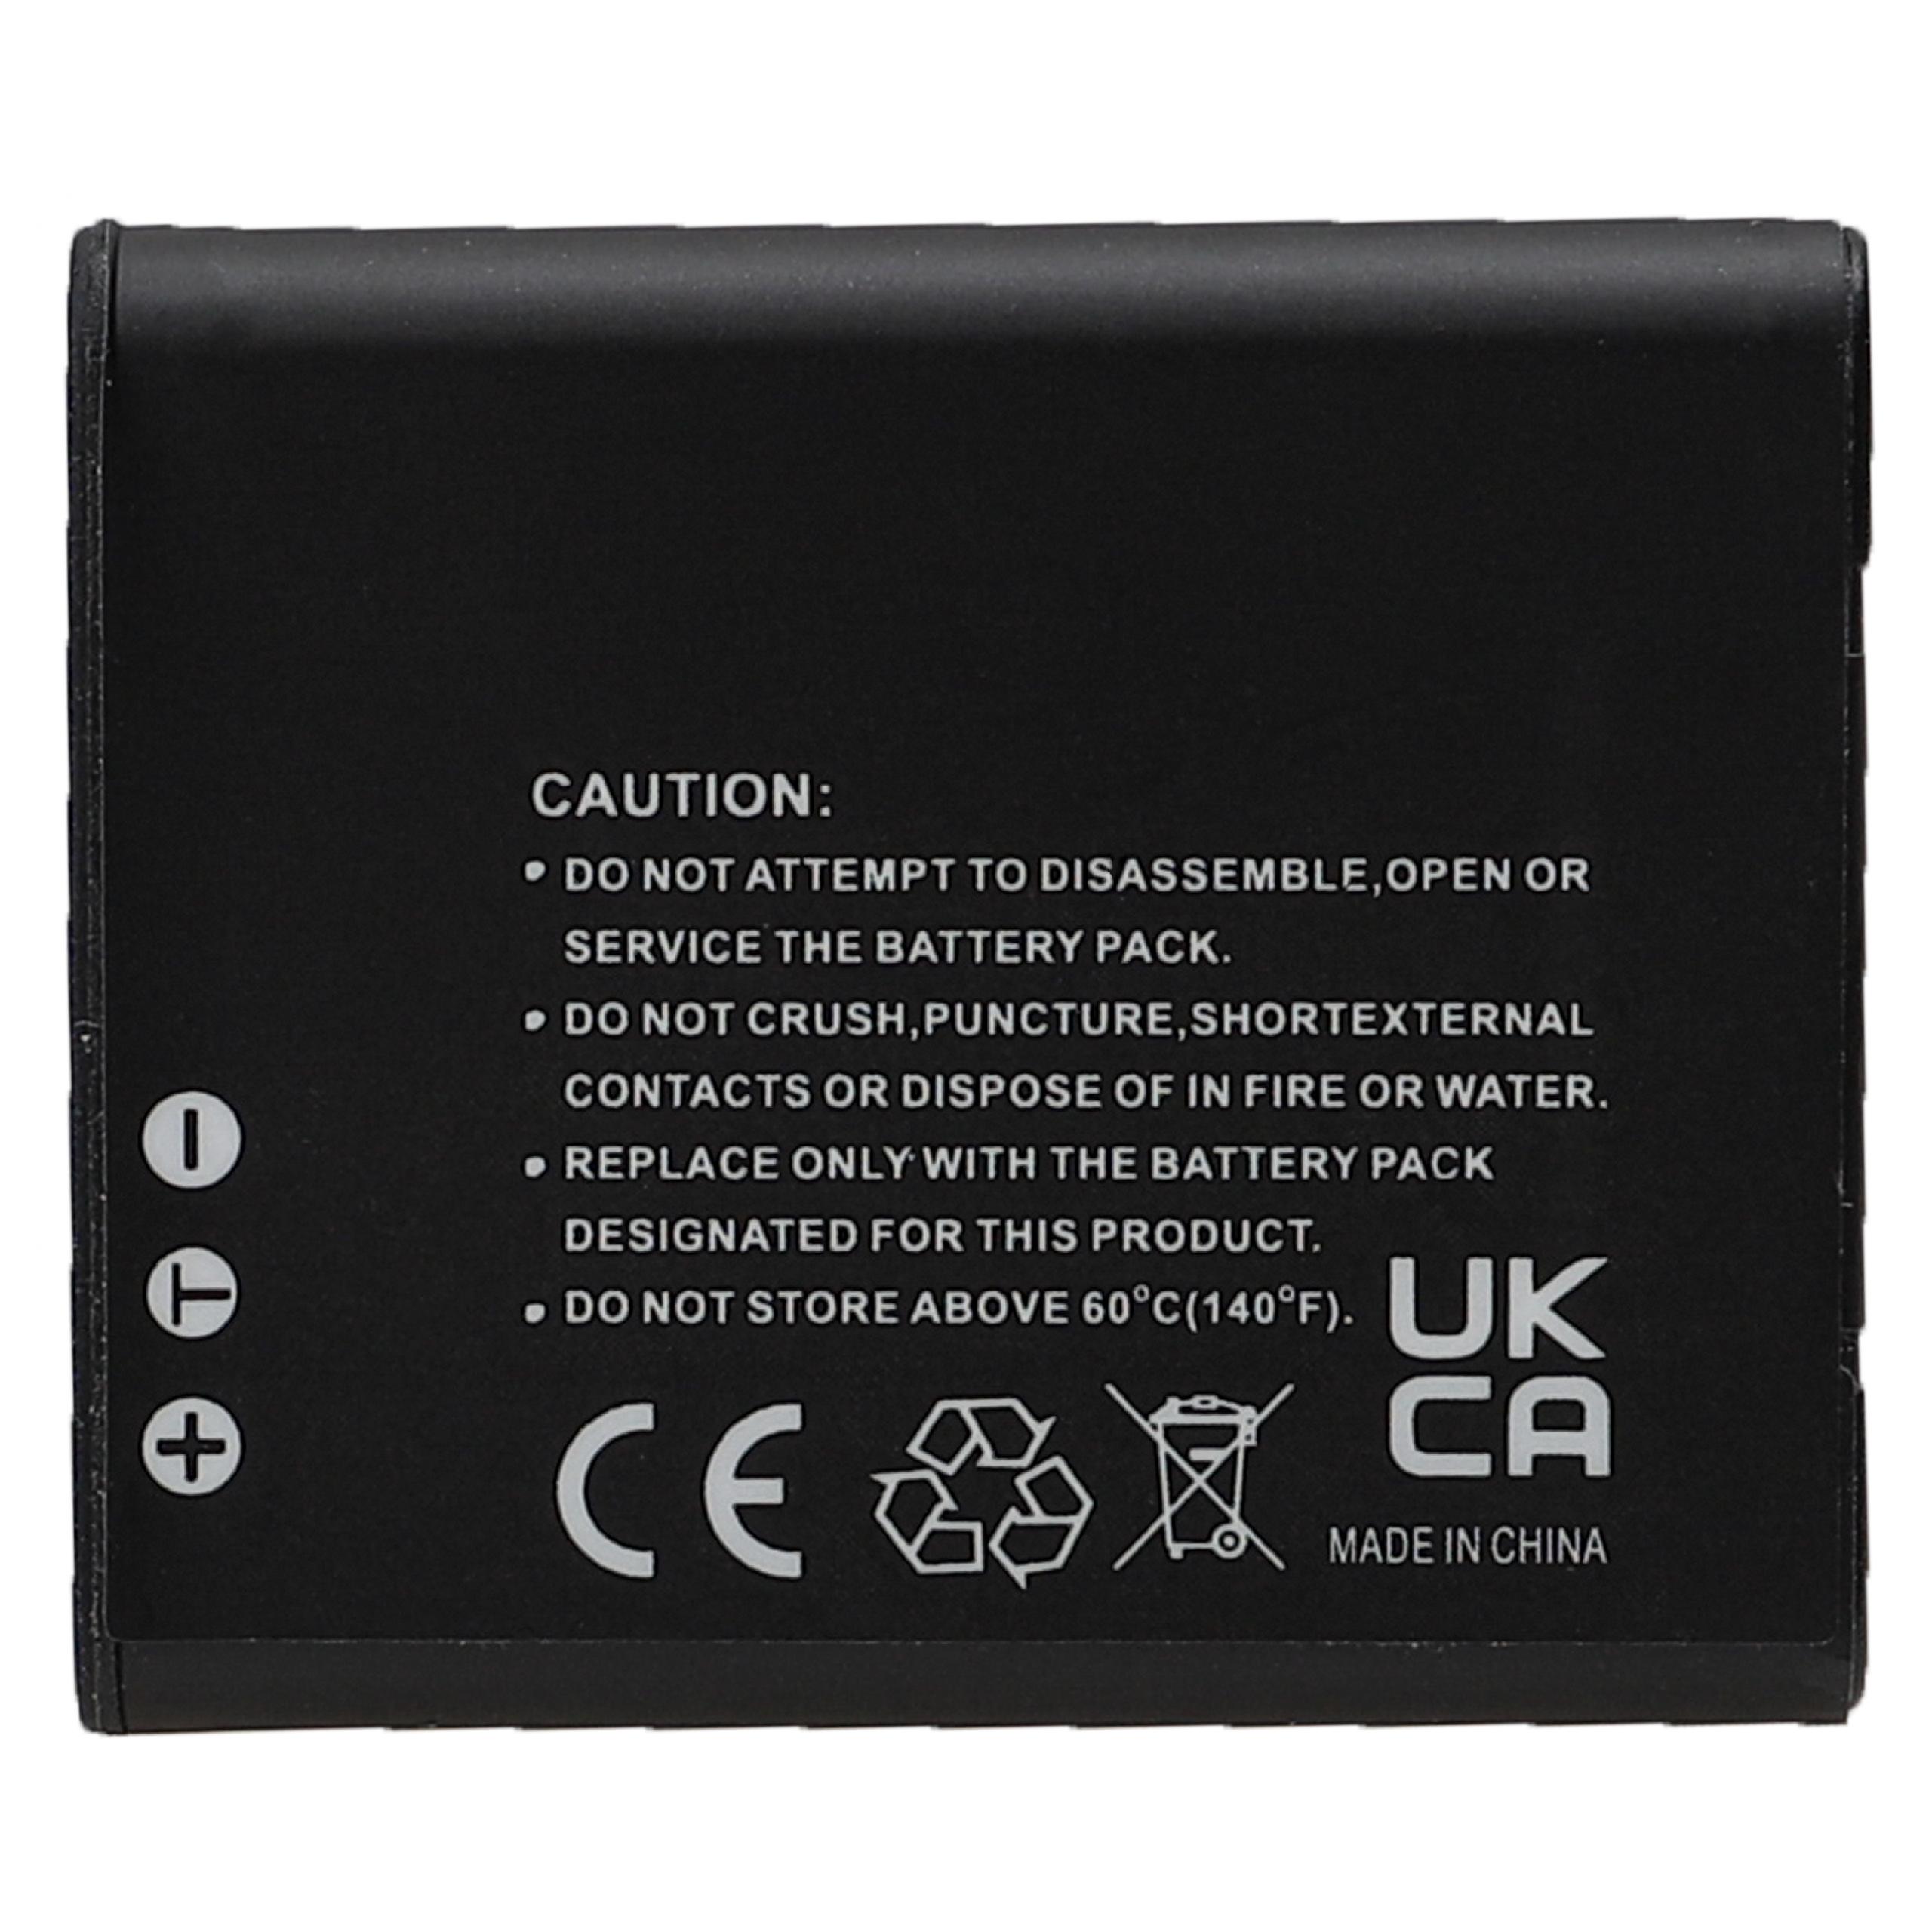 Batterie remplace Casio NP-150, NP-10 pour appareil photo - 770mAh 3,7V Li-ion